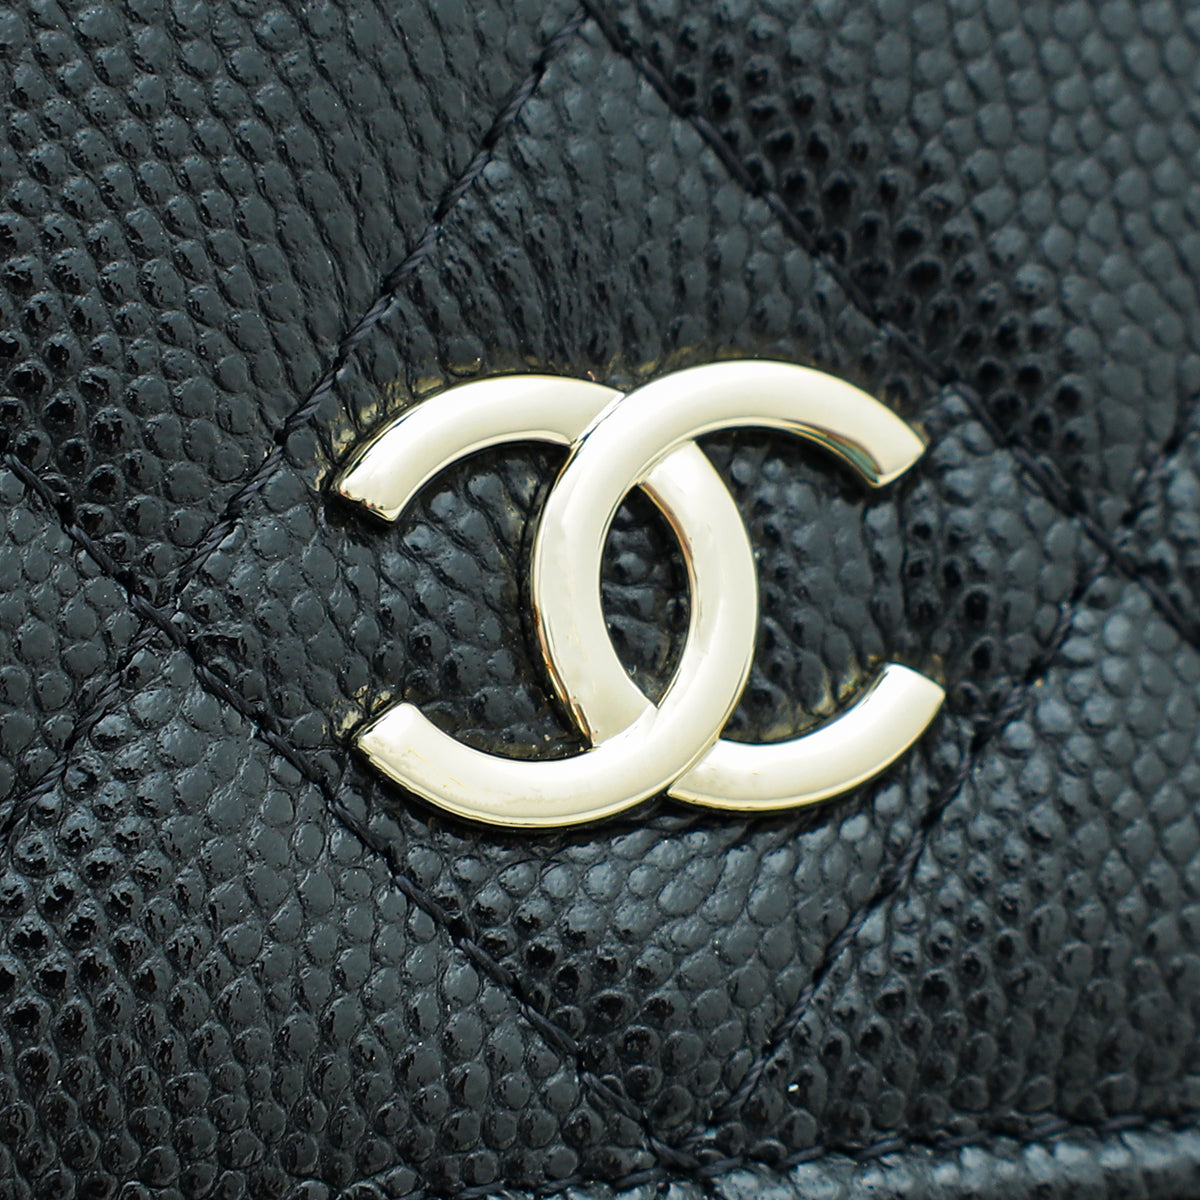 Chanel Black CC Pearl Flap Coin Purse w/Chain